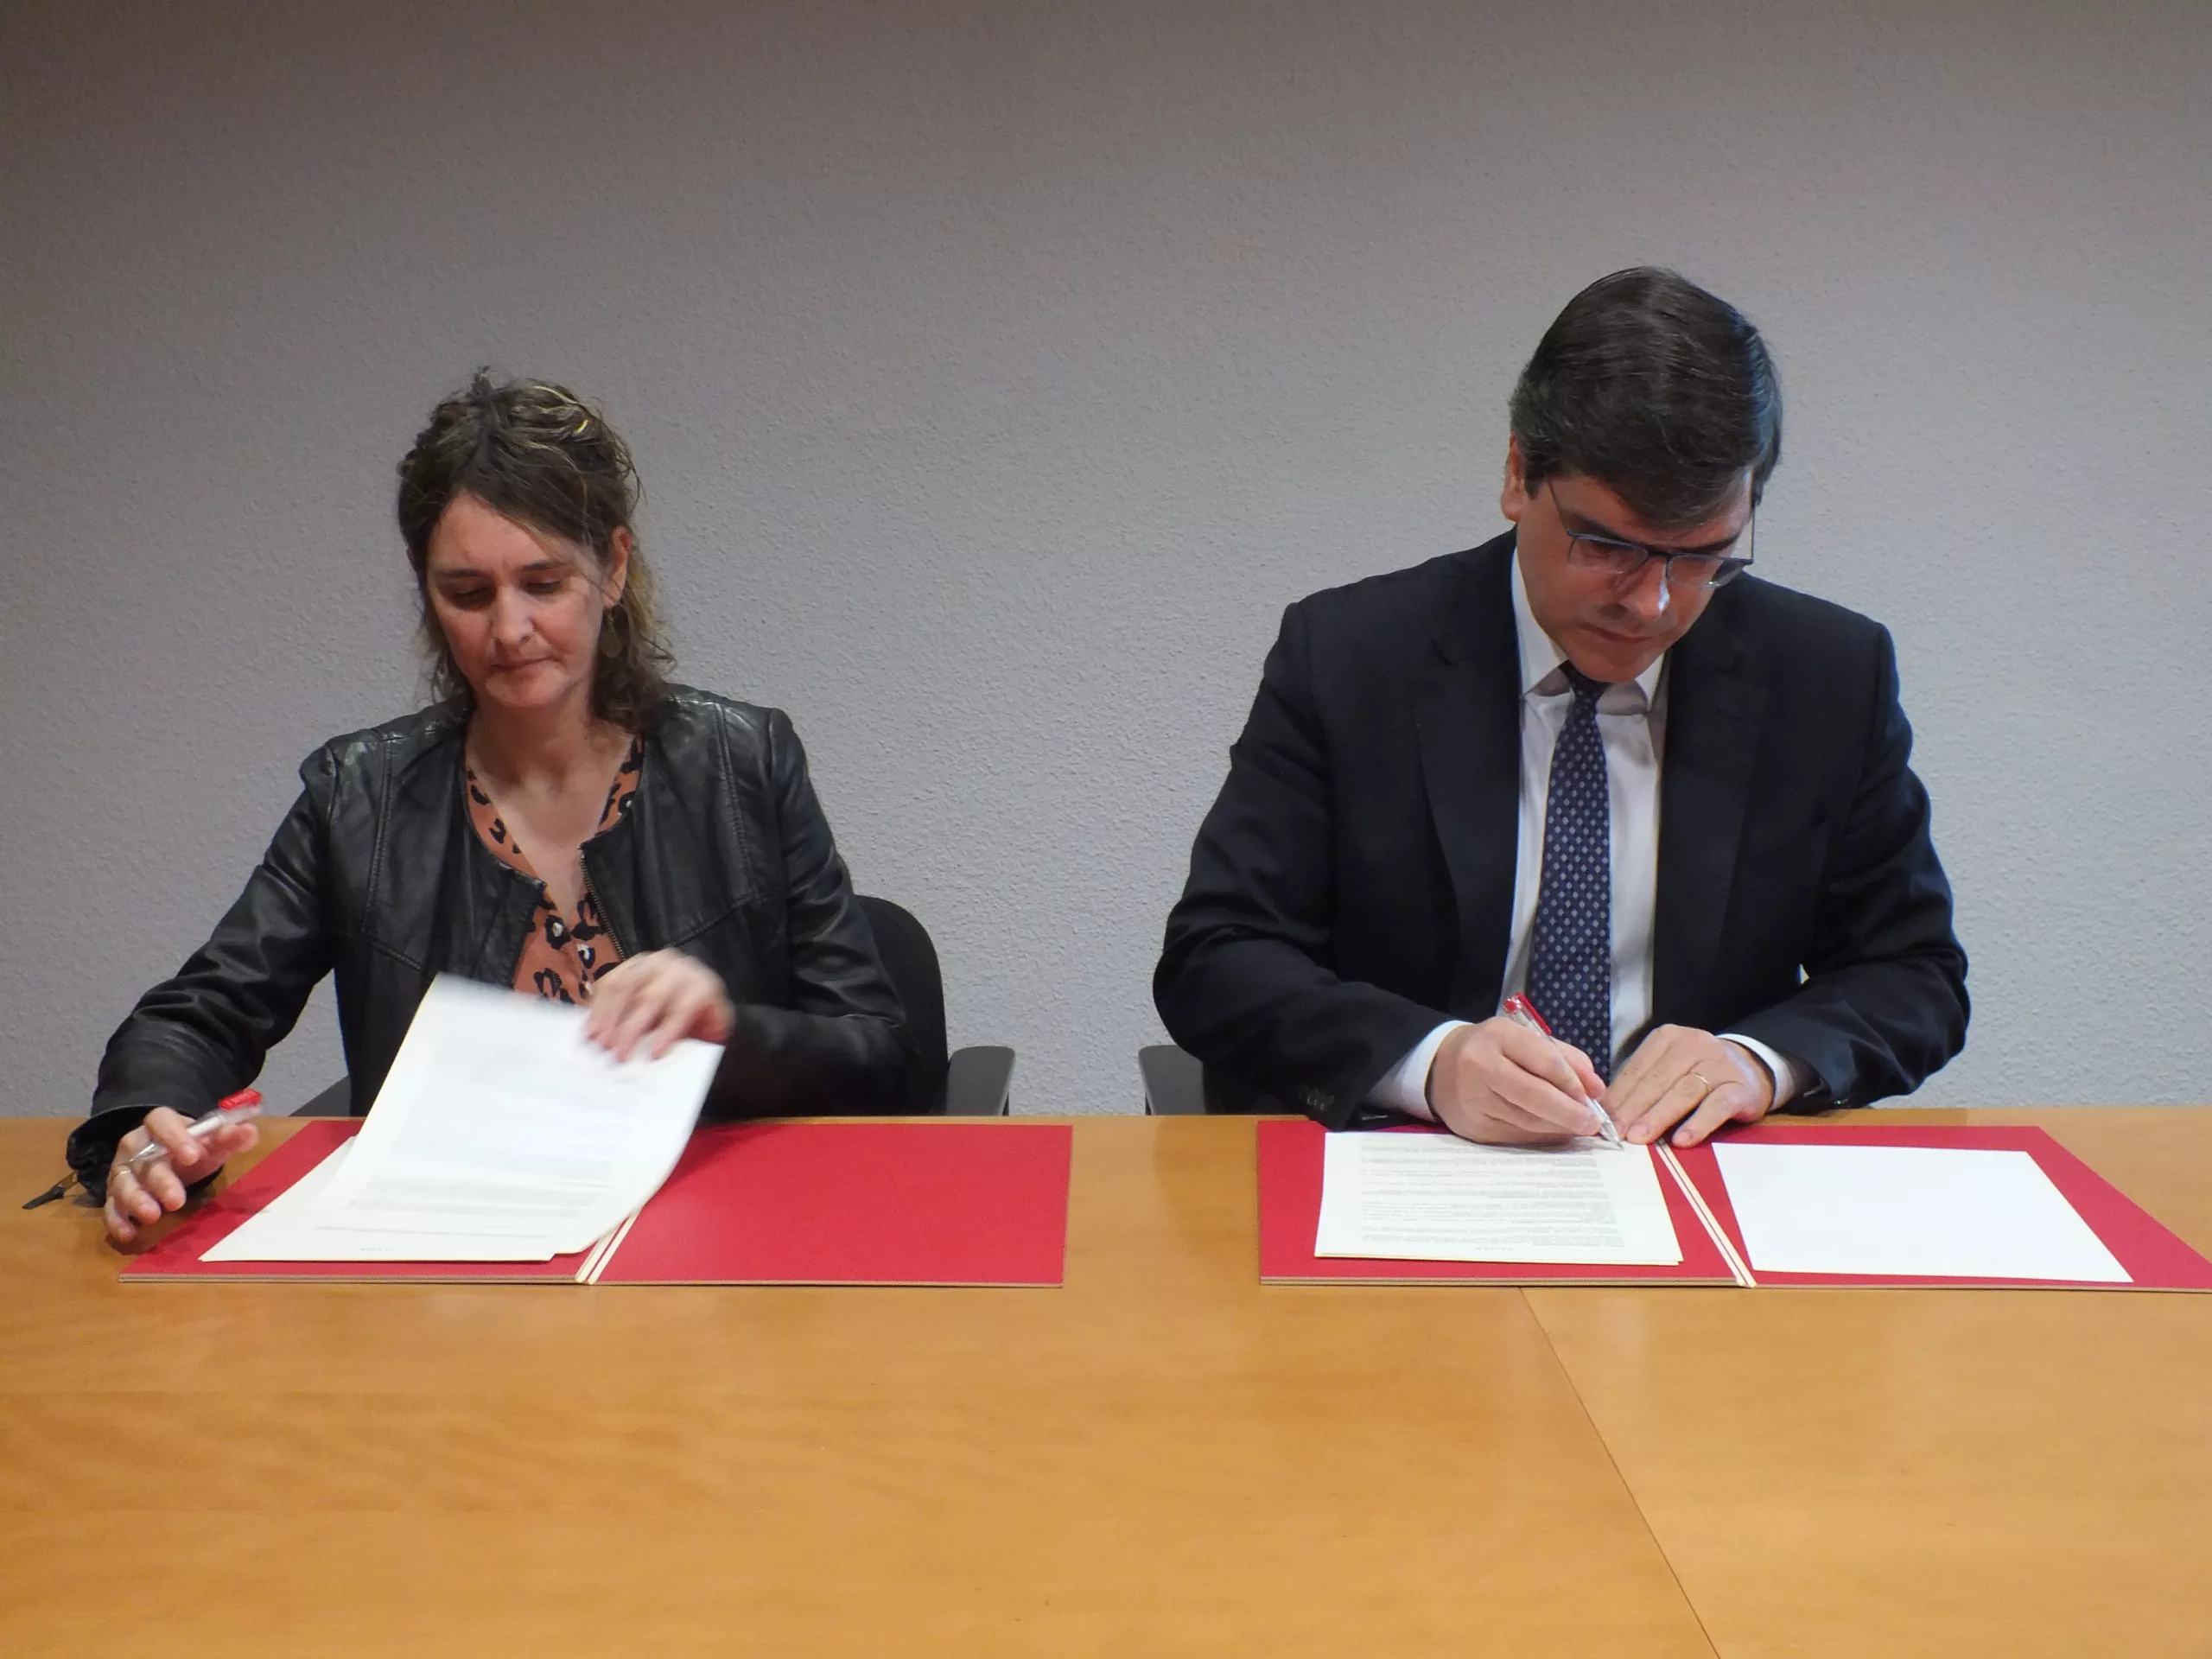 L’Observatori, Dona, Economia i Empresa i Agbar signen un acord de col·laboració